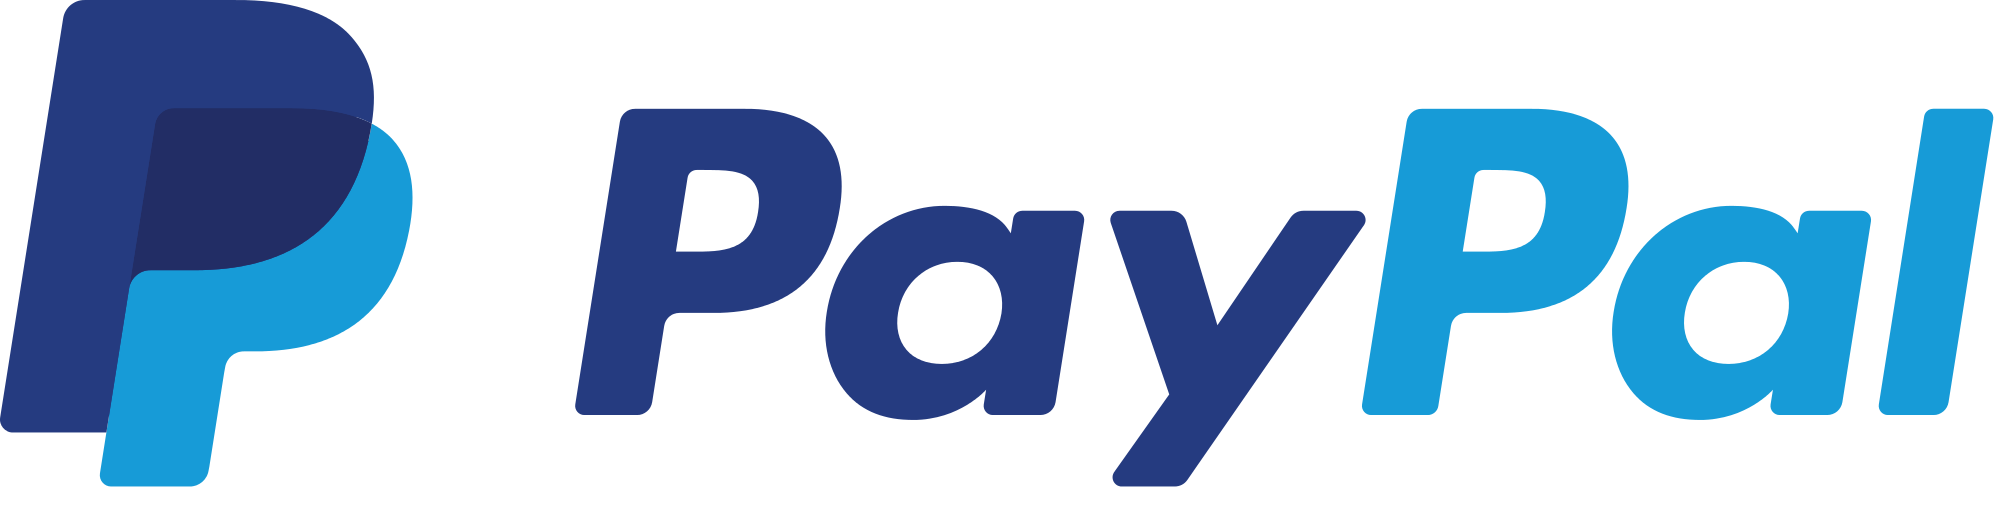 U kunt bij Holland Sail betalen met PayPal